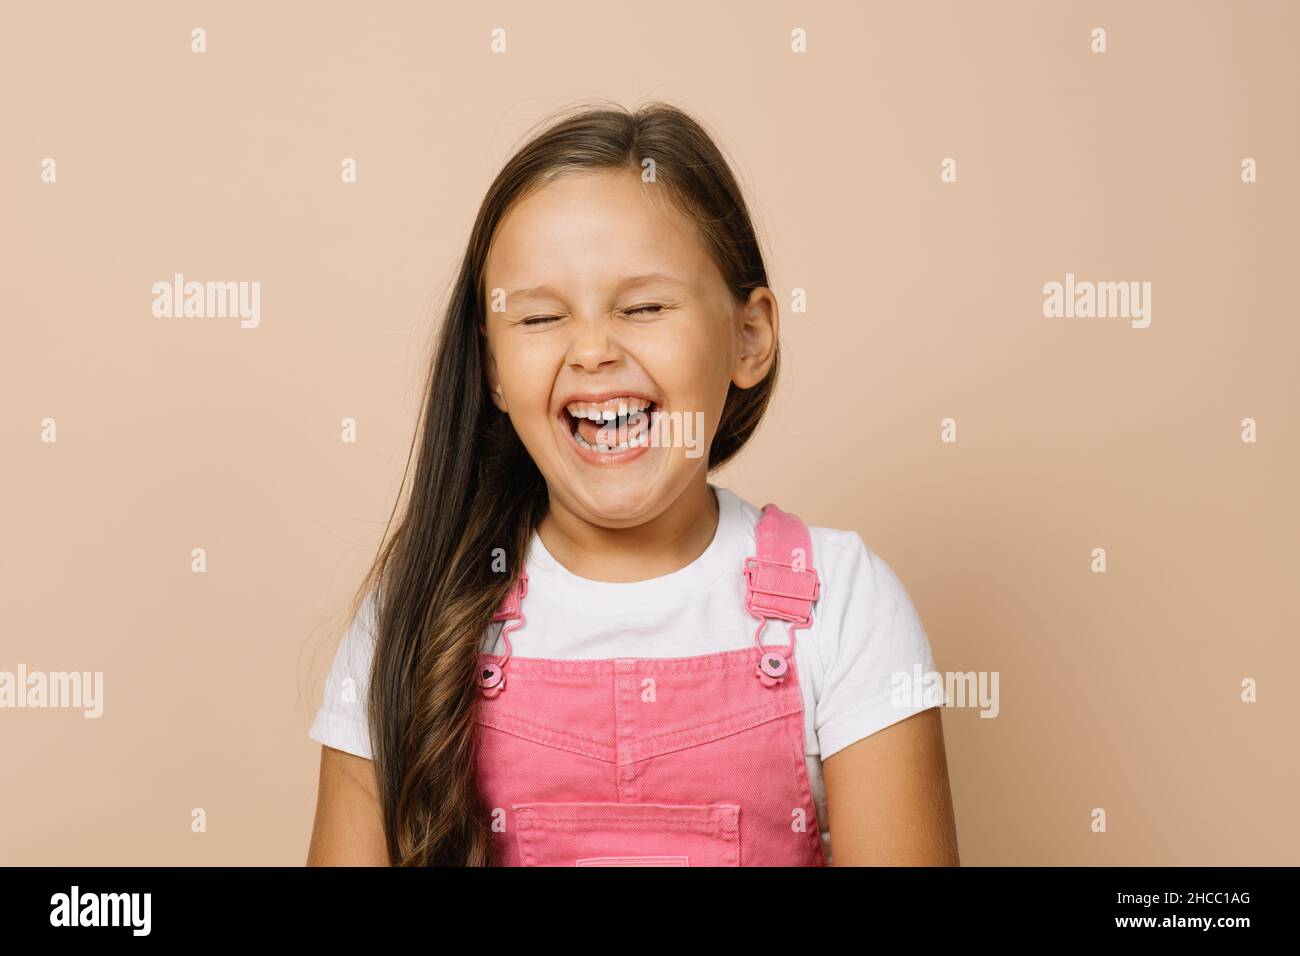 Porträt eines Kindes mit vollständig geöffnetem Mund, geschlossenen Augen und aufgeregt Lächeln mit Zähnen Blick auf die Kamera in leuchtend rosa Jumpsuit und weißem T-Shirt Stockfoto